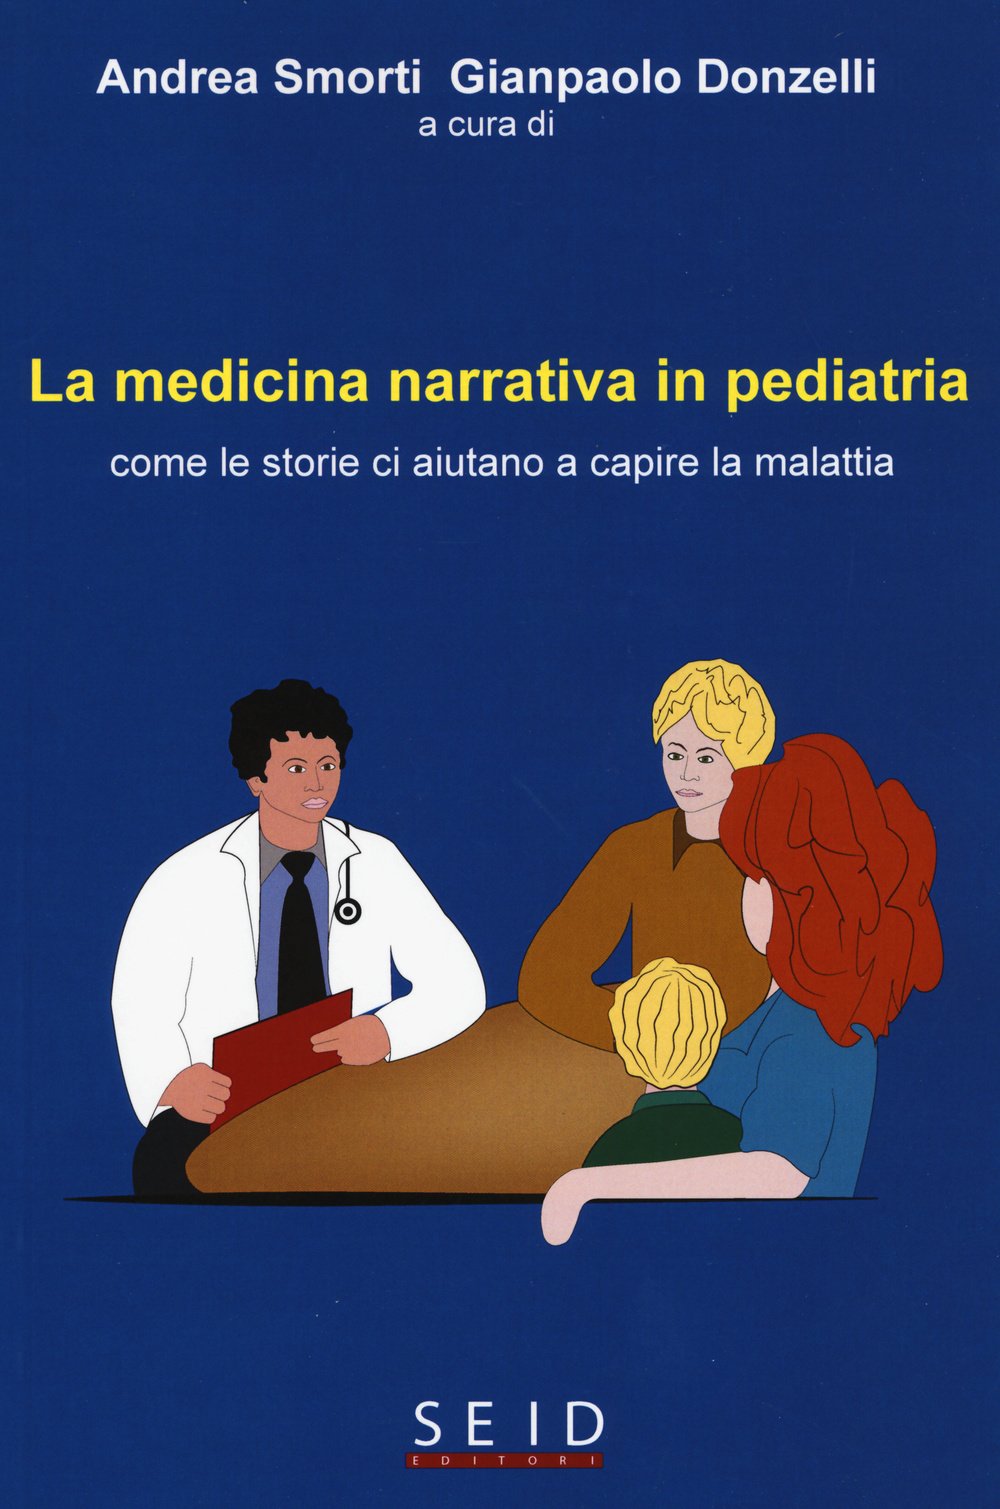 Smorti A., Donzelli G.P. (2015). La medicina narrativa in pediatria. Come le storie ci aiutano a capire la malattia. Seid Editori